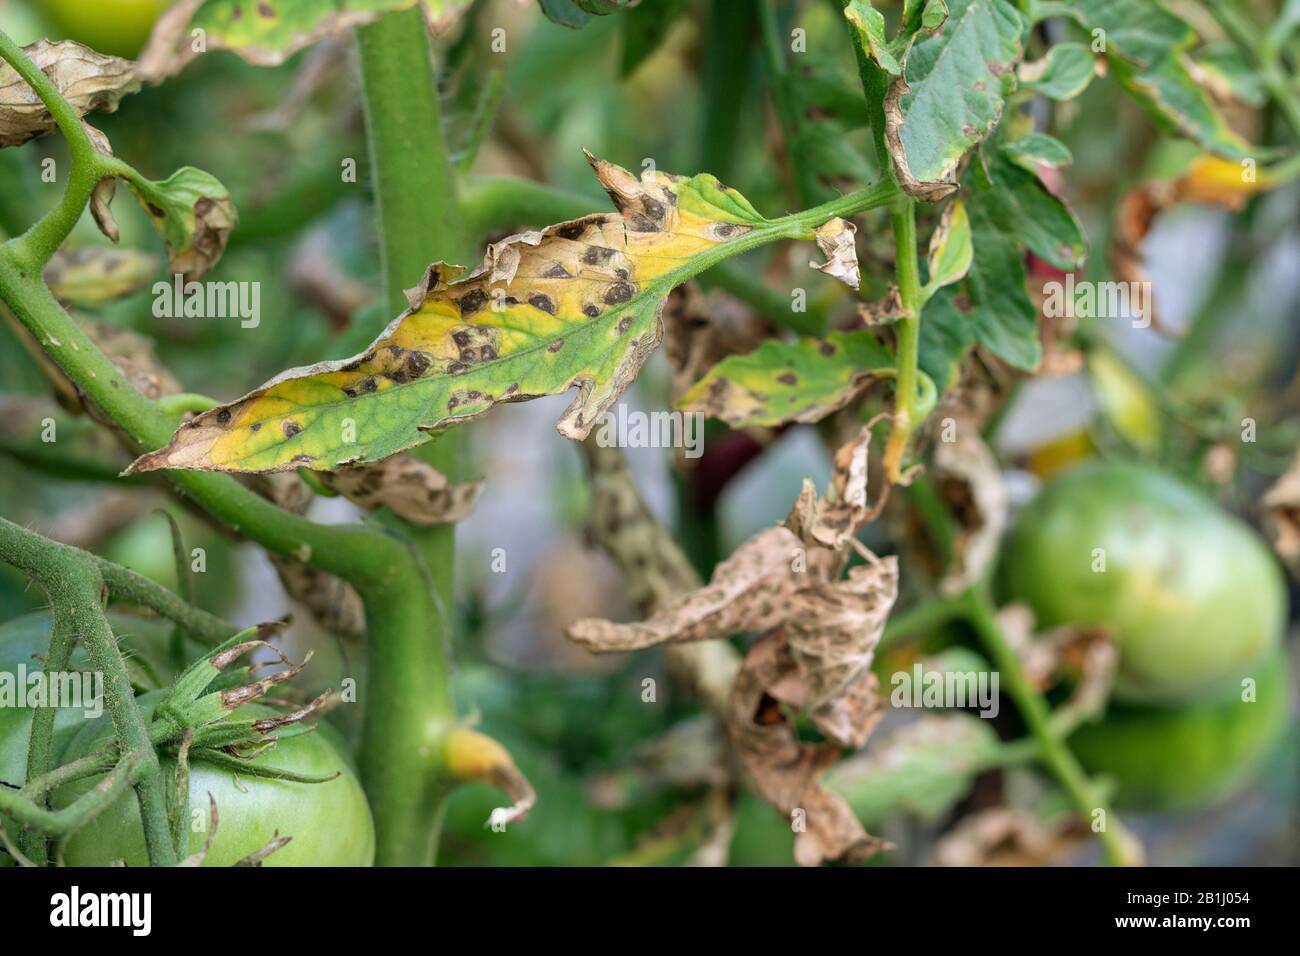 Tomatenblut auf Blattwerk. Pilzproblem Phytophthora infestans und ist Krankheit, die Spotting auf späten Tomatenblättern verursacht. Stockfoto